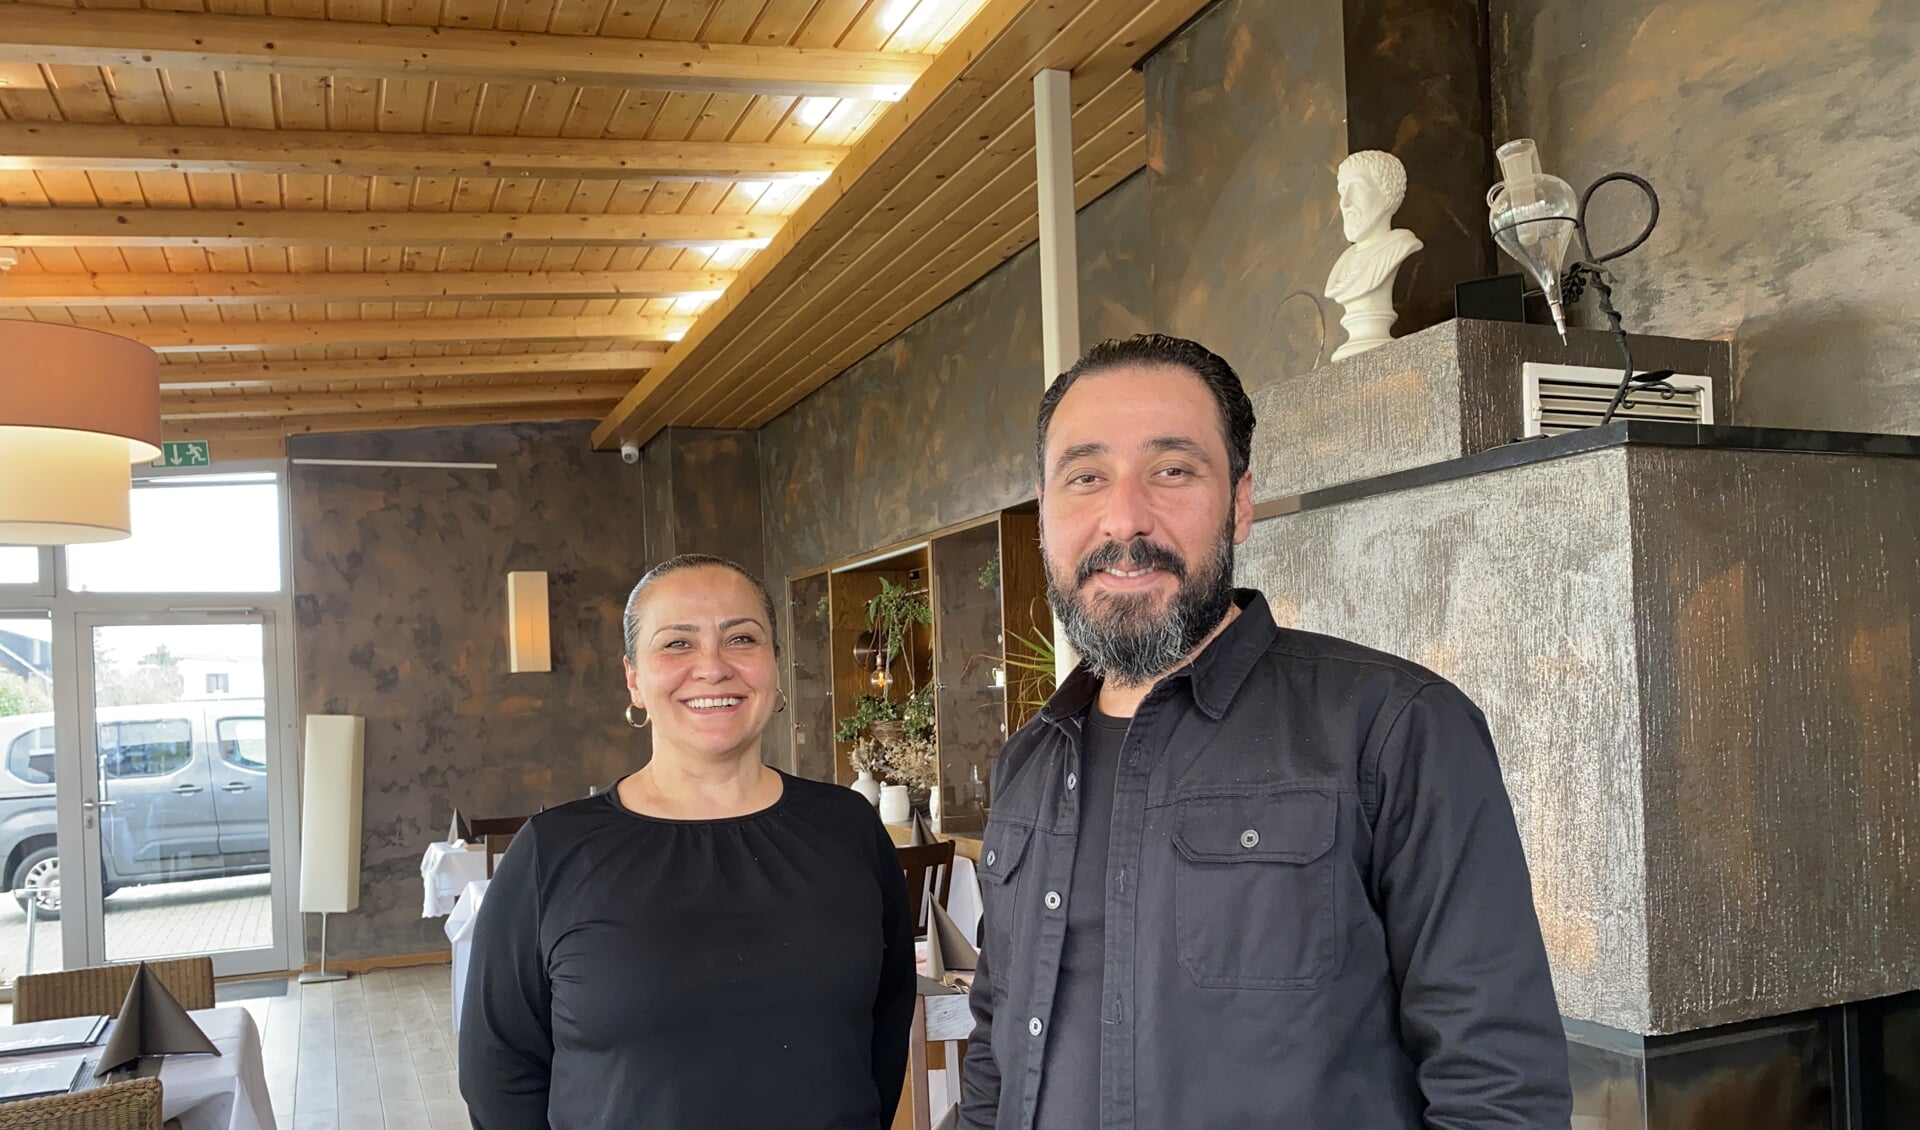 Gastvrouw Selda en kok Mahfuz  van restaurant Rhodos in Kessel (D) bogen op jarenlange ervaring in de gastronomie.